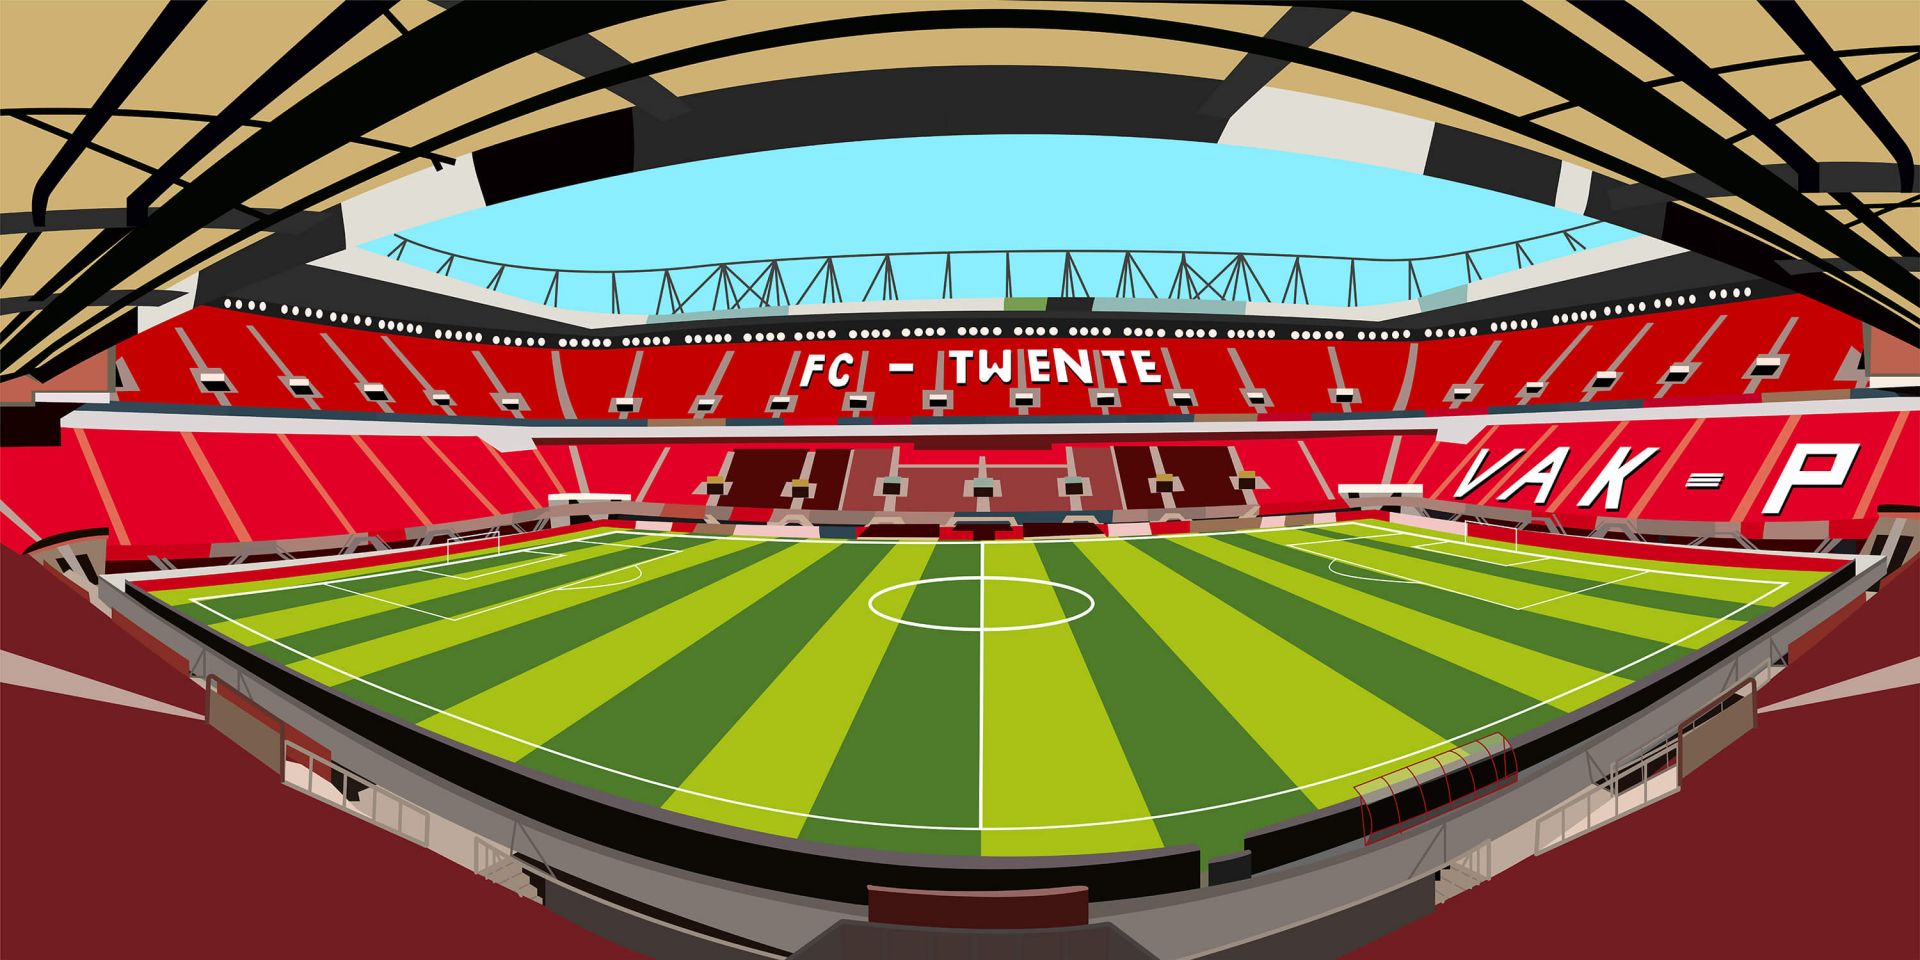 min nog een keer Atletisch Stadion Grolsch Veste - FC Twente - Enschede - Fotobehang